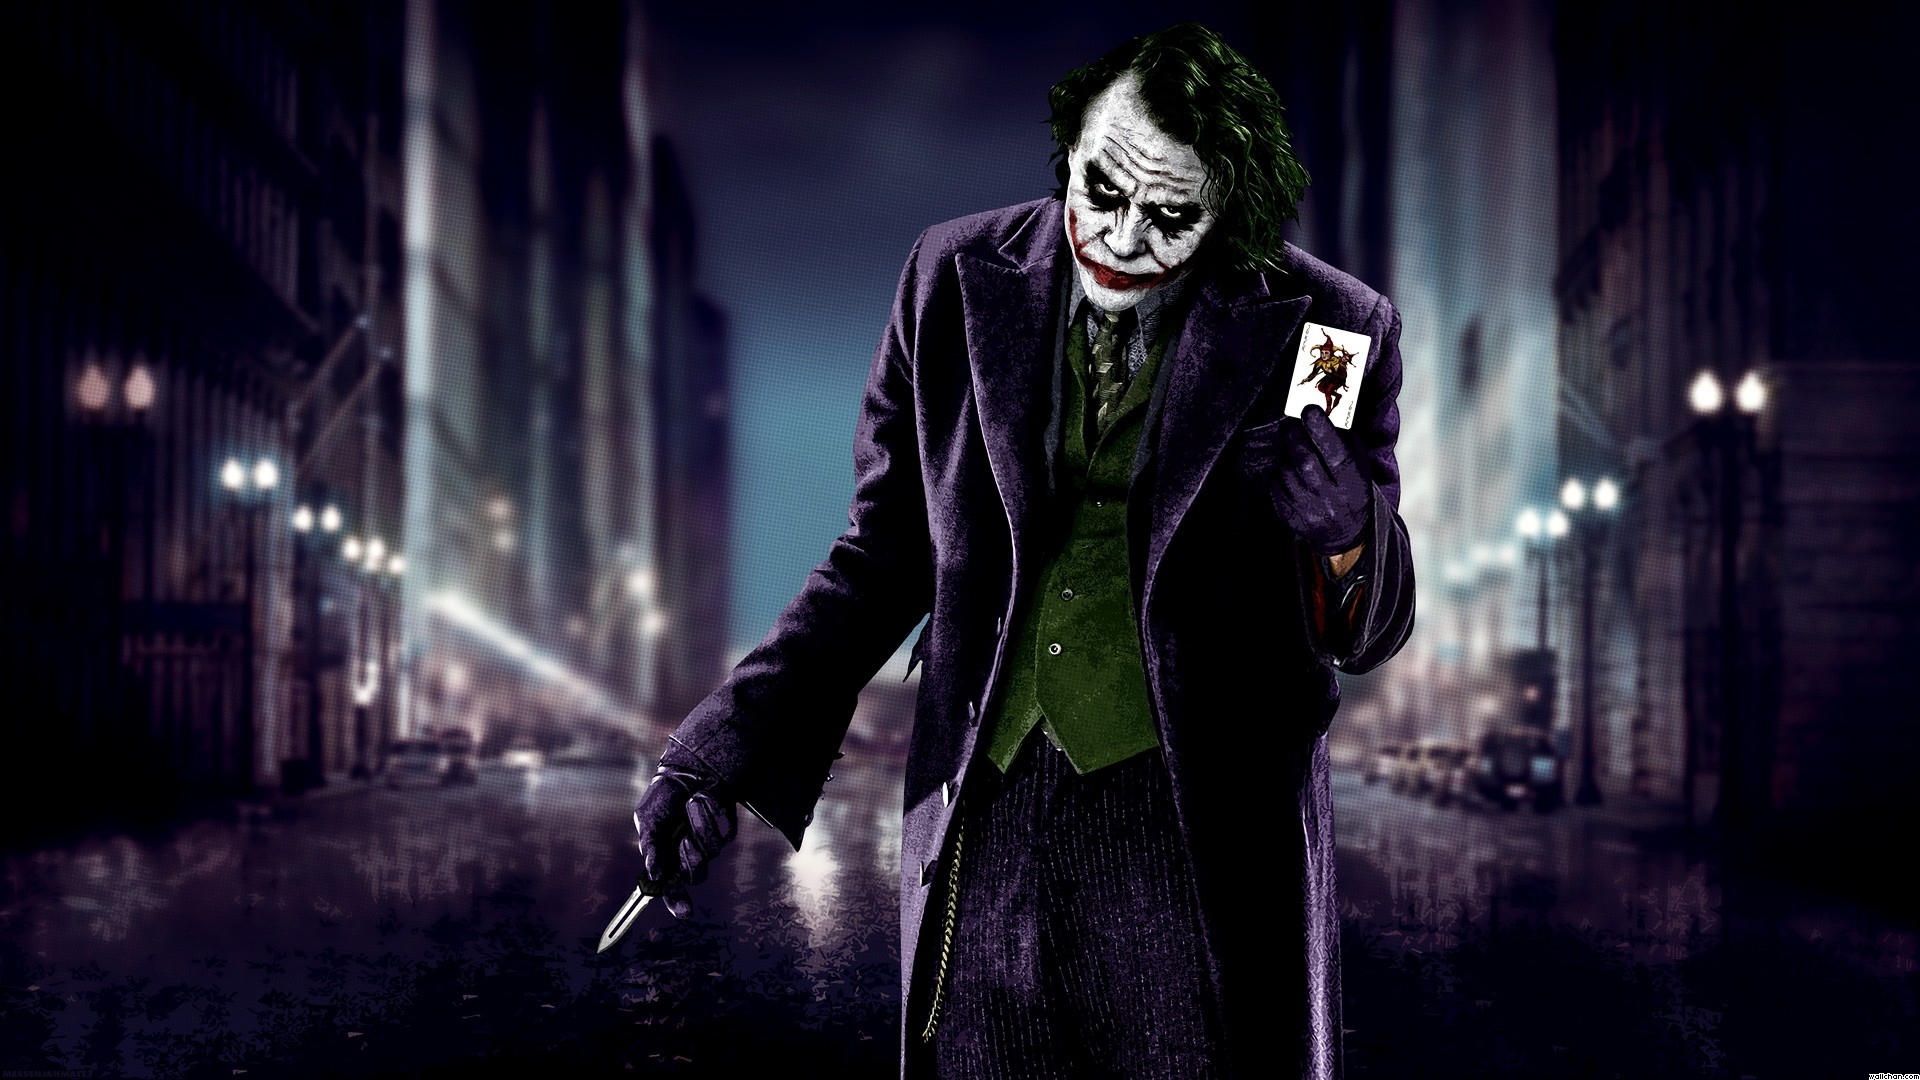 Batman And Jojer Joker City 1920x1080